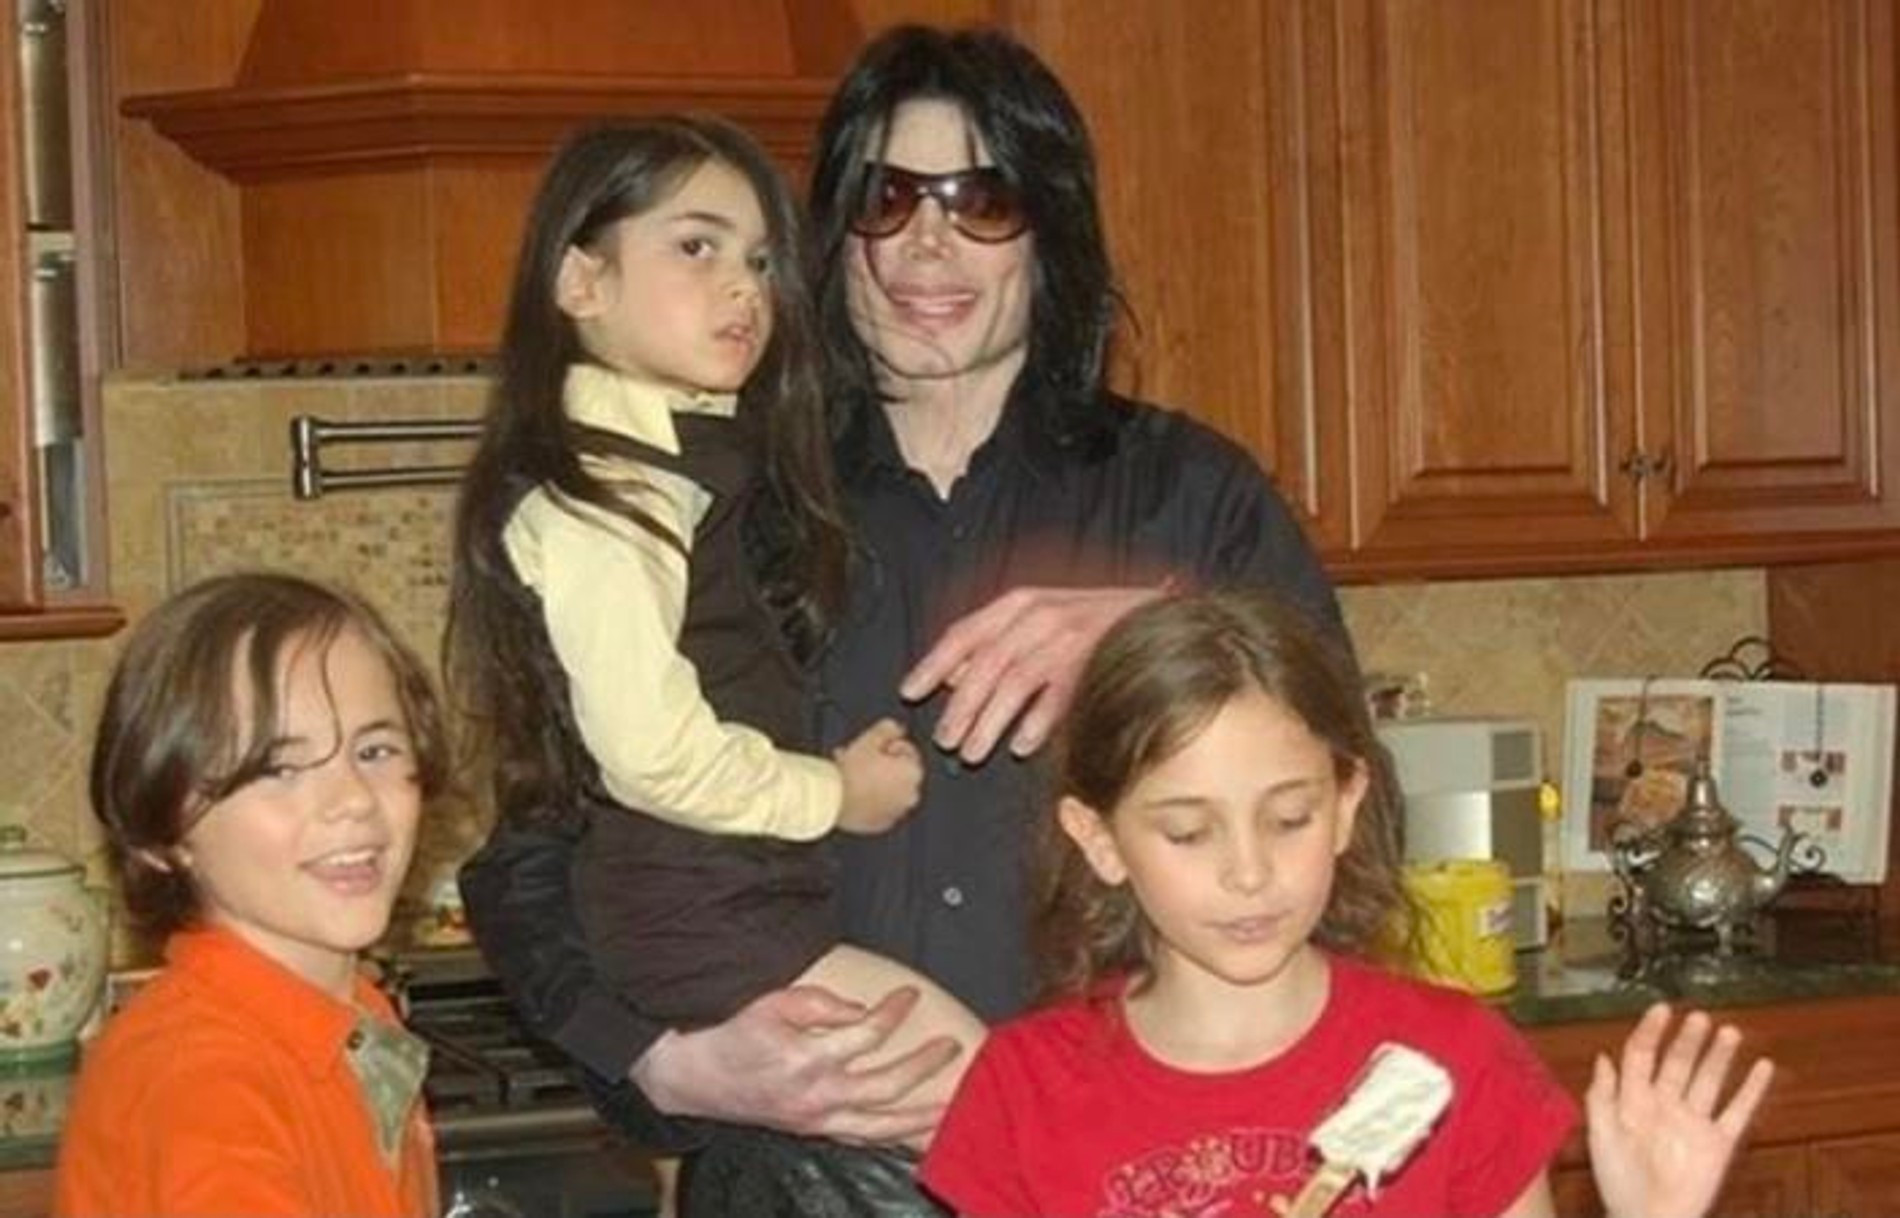 Причины белокожести детей Майкла Джексона: наследство, генетика, косметические процедуры